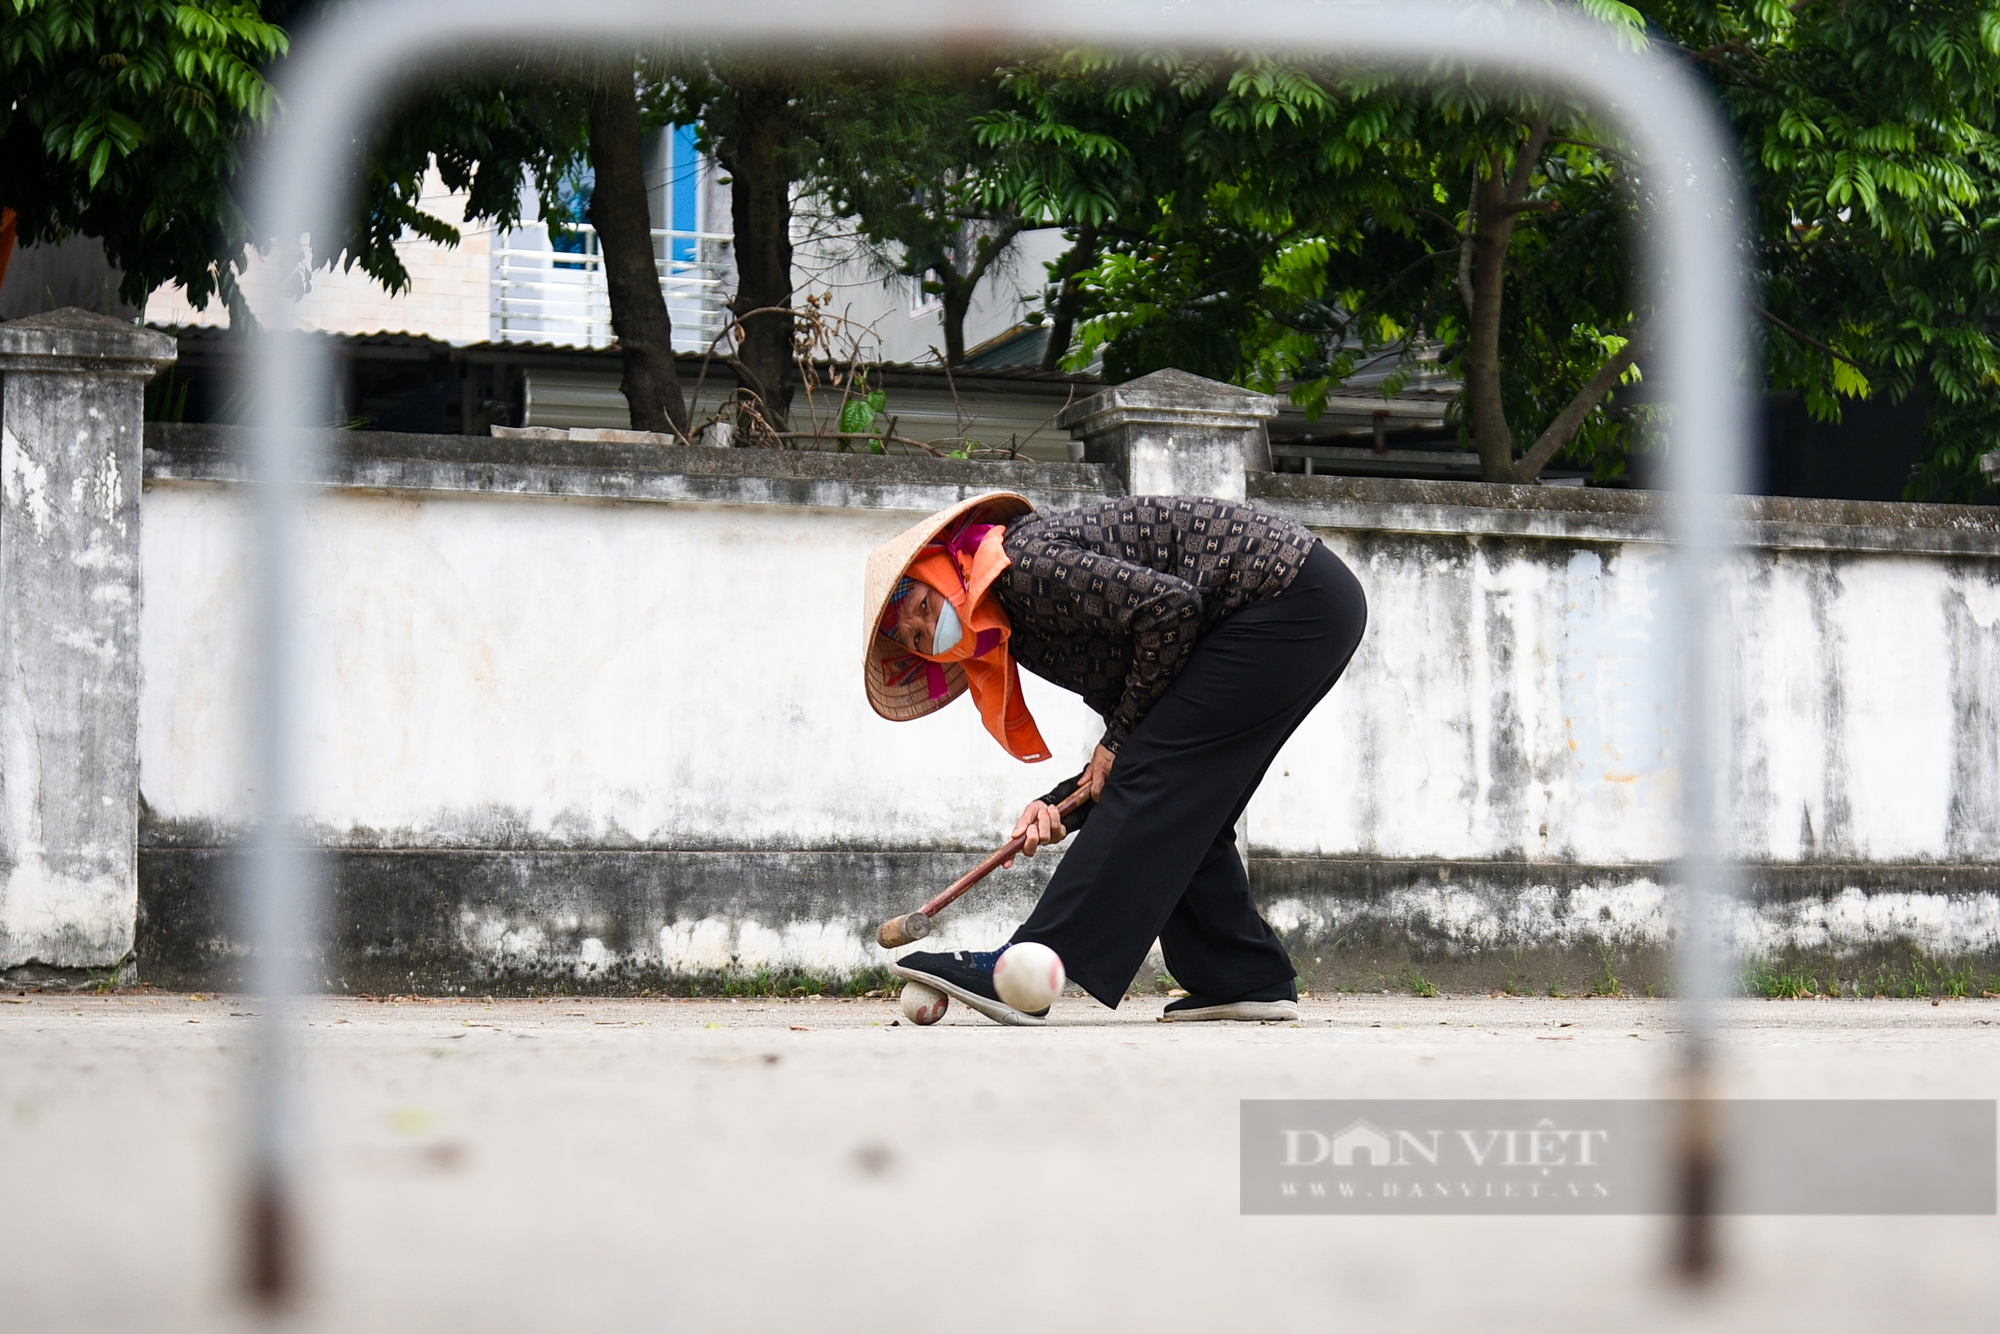 Người dân ngoại thành Hà Nội say mê vung gậy chơi môn thể thao quý tộc châu Âu - Ảnh 8.